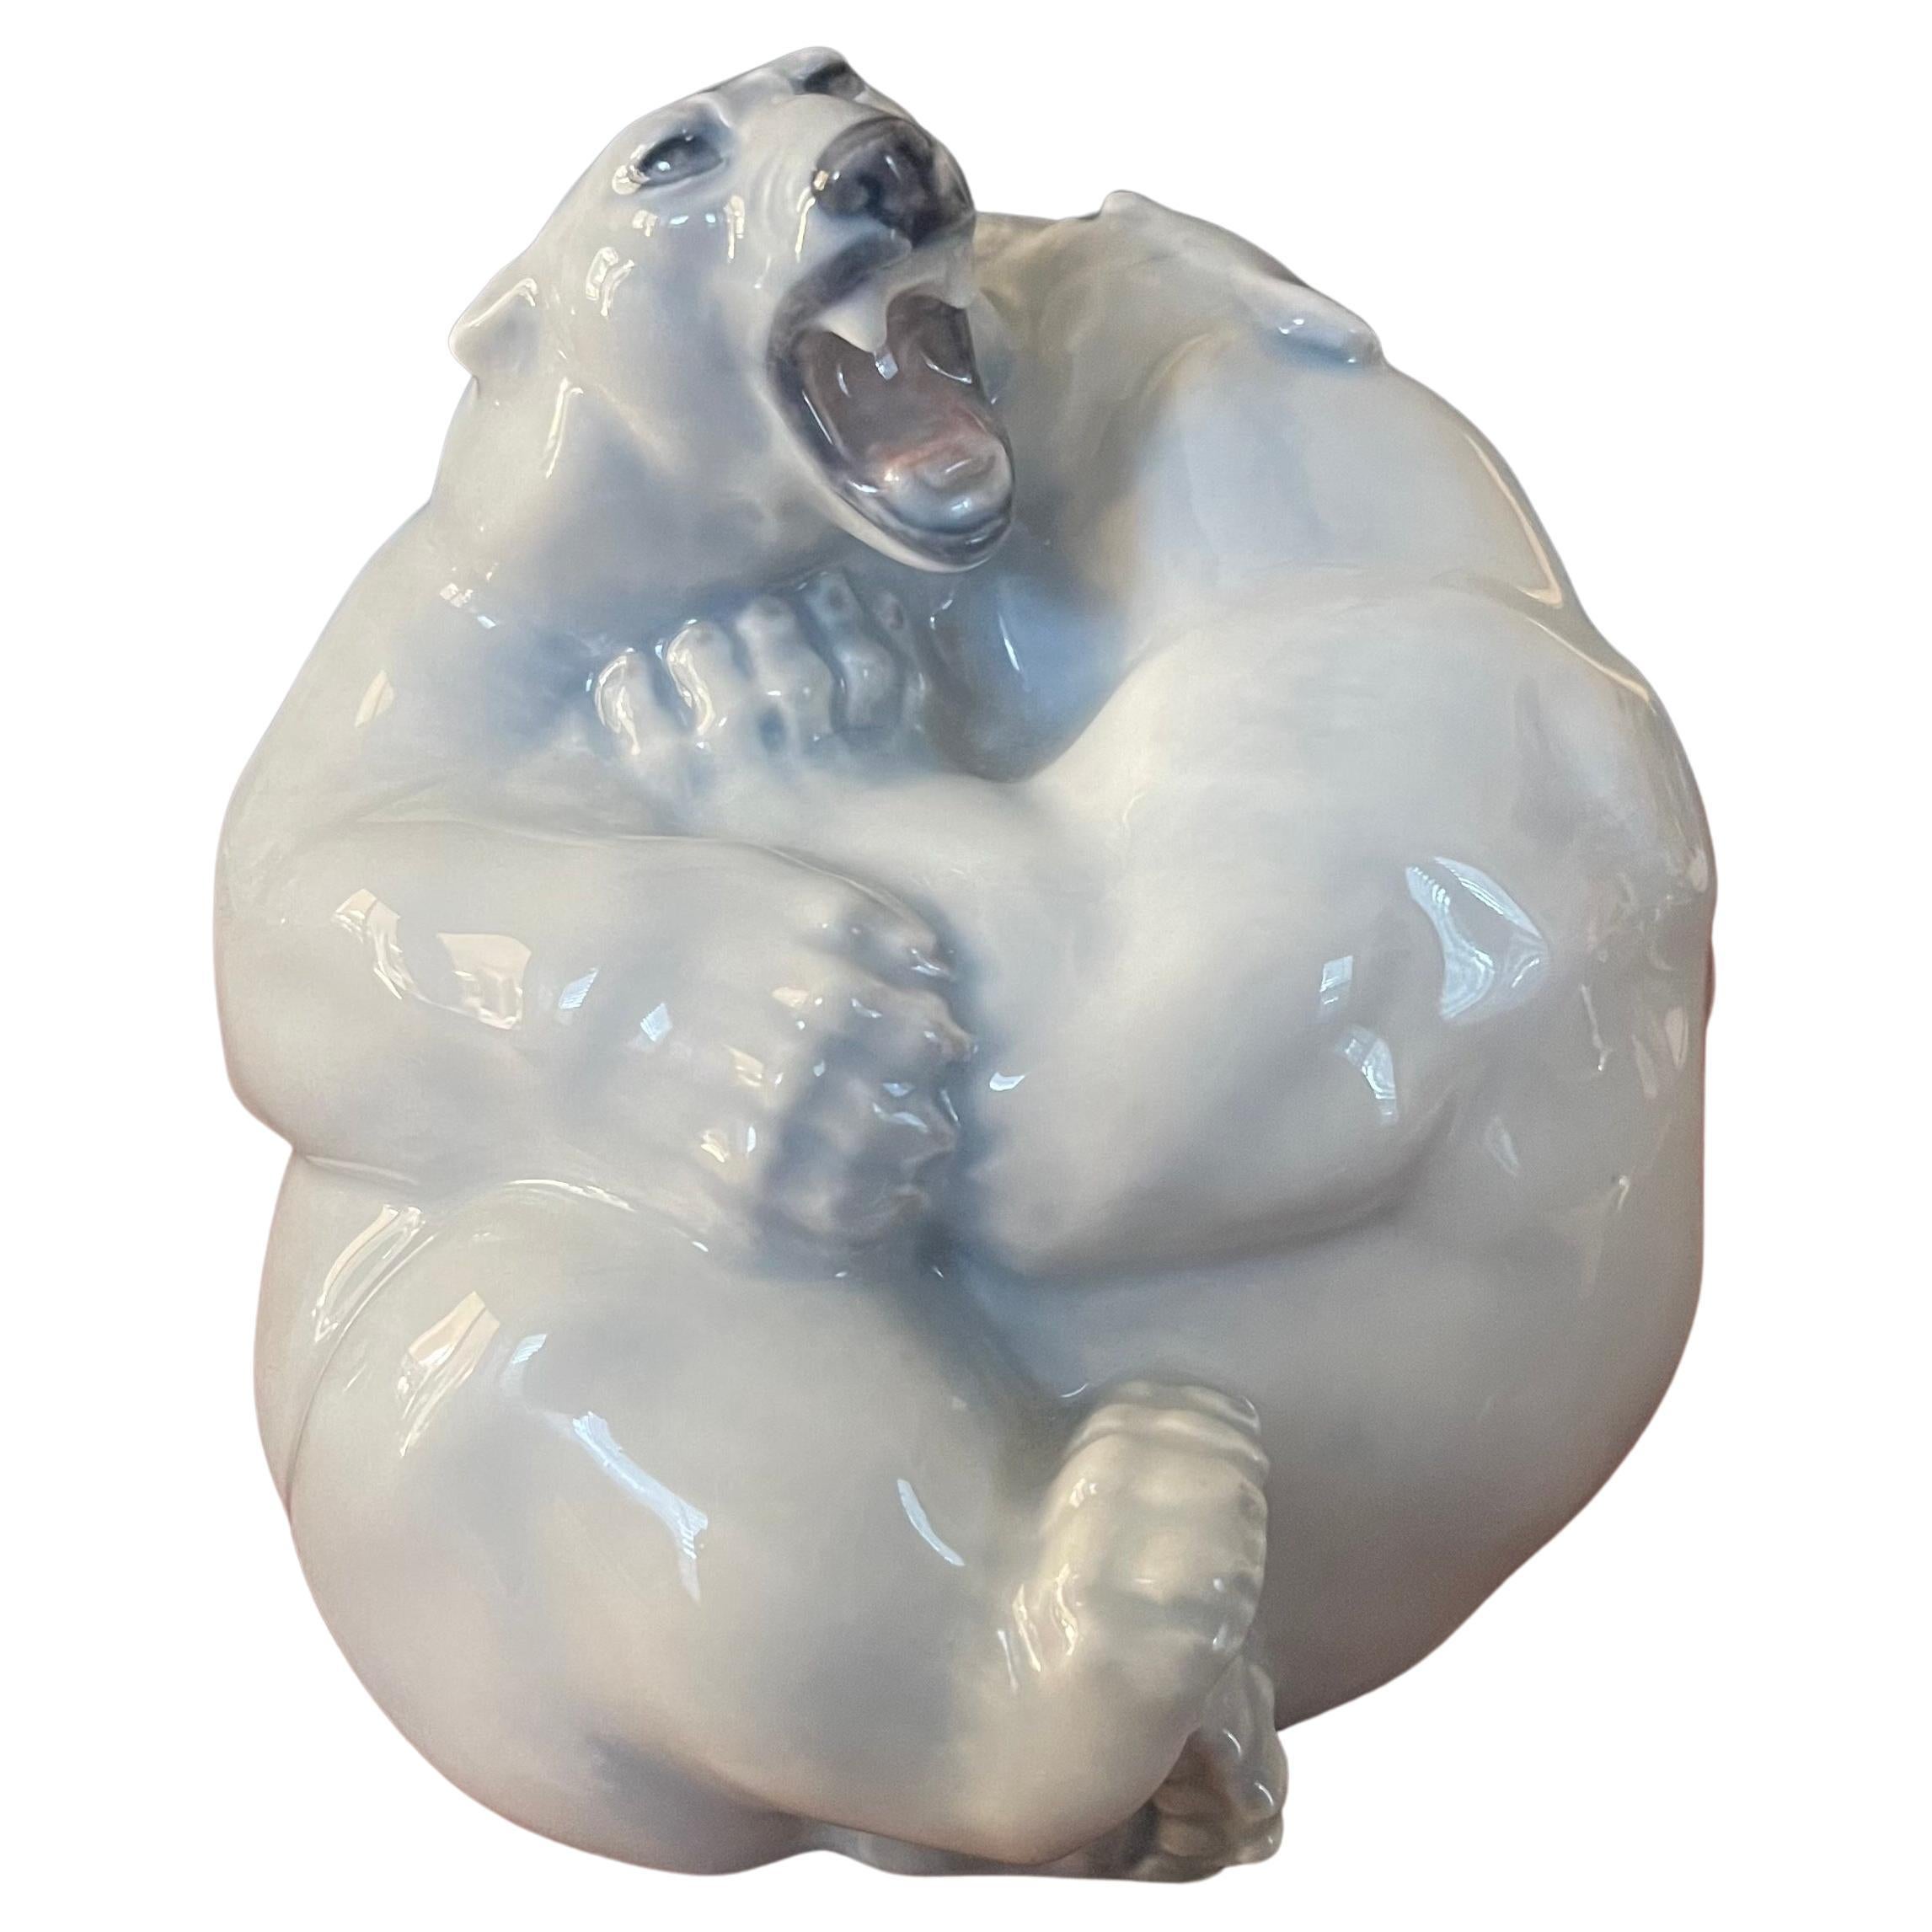 Sculpture en porcelaine représentant des ours polaires en train de se battre, réalisée par Royal Copenhagen, vers 1936 (ligne de poinçon au-dessus de 